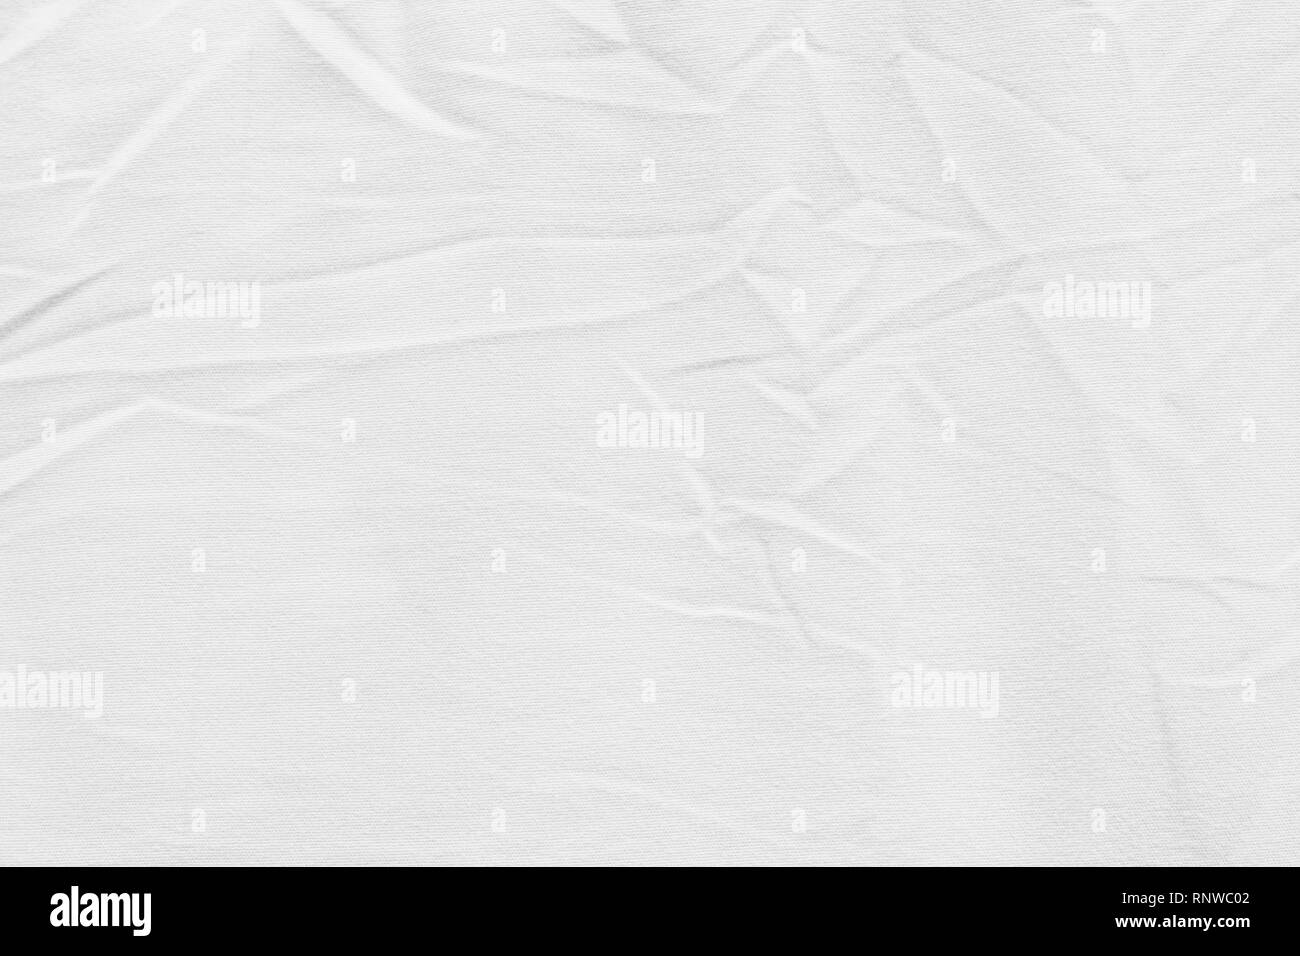 Tejido de algodón blanco de lienzo arrugada textura del fondo para el diseño de fondo o superposición blackdrop Foto de stock